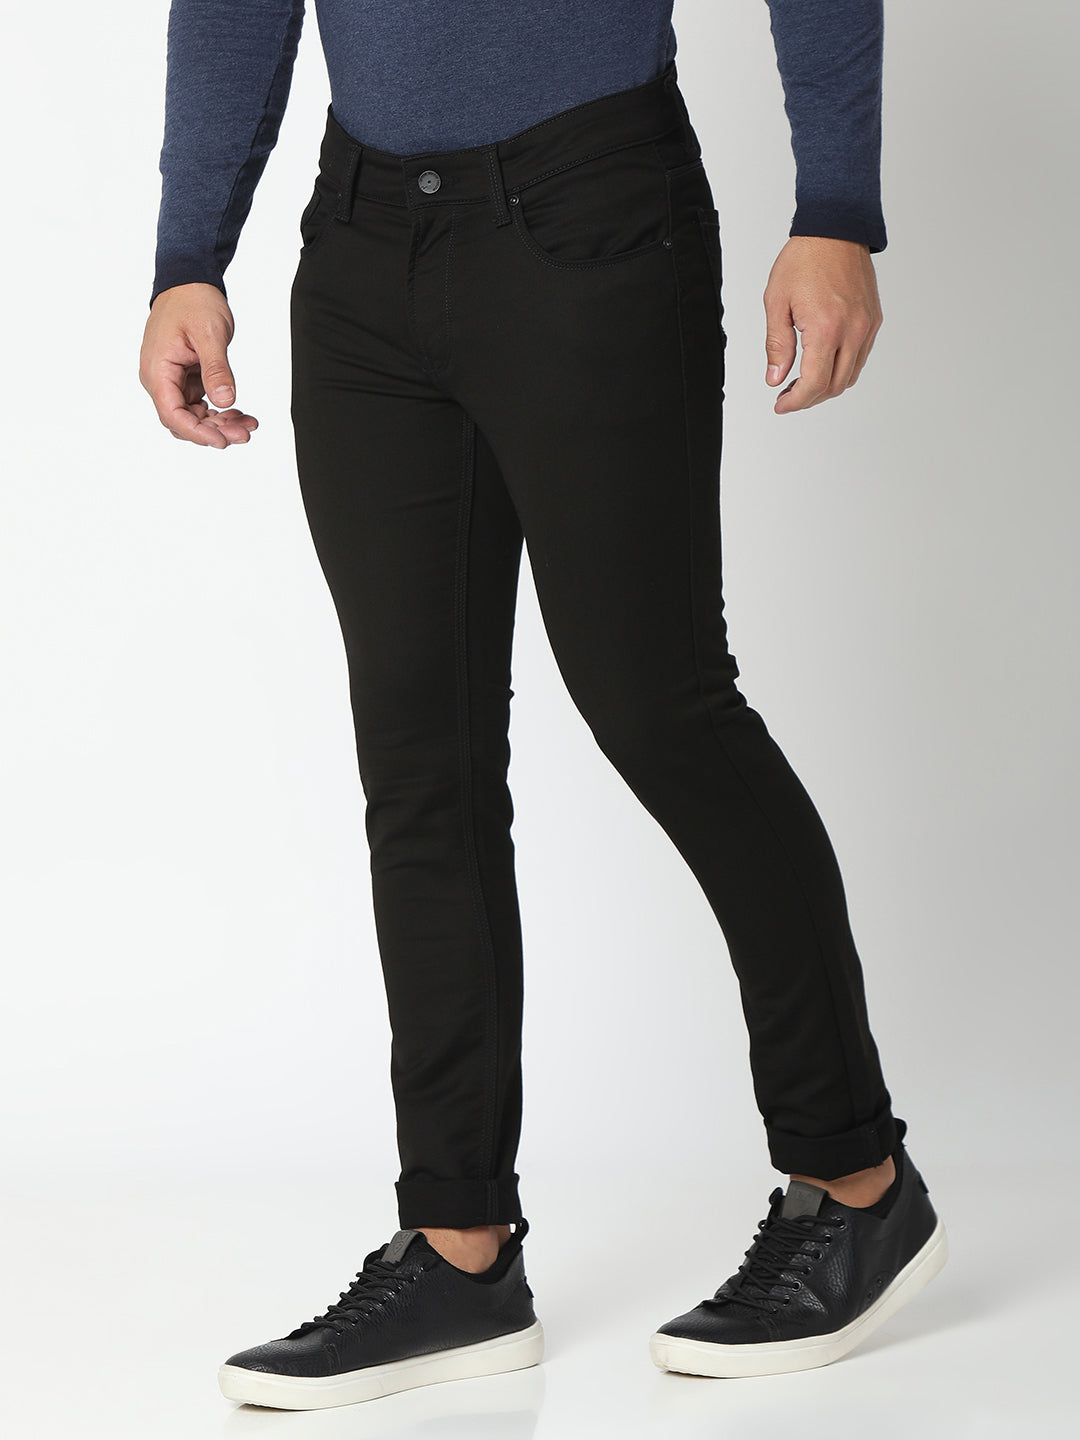 Spykar Black Cotton Super Slim Fit Tapered Length Jeans For Men